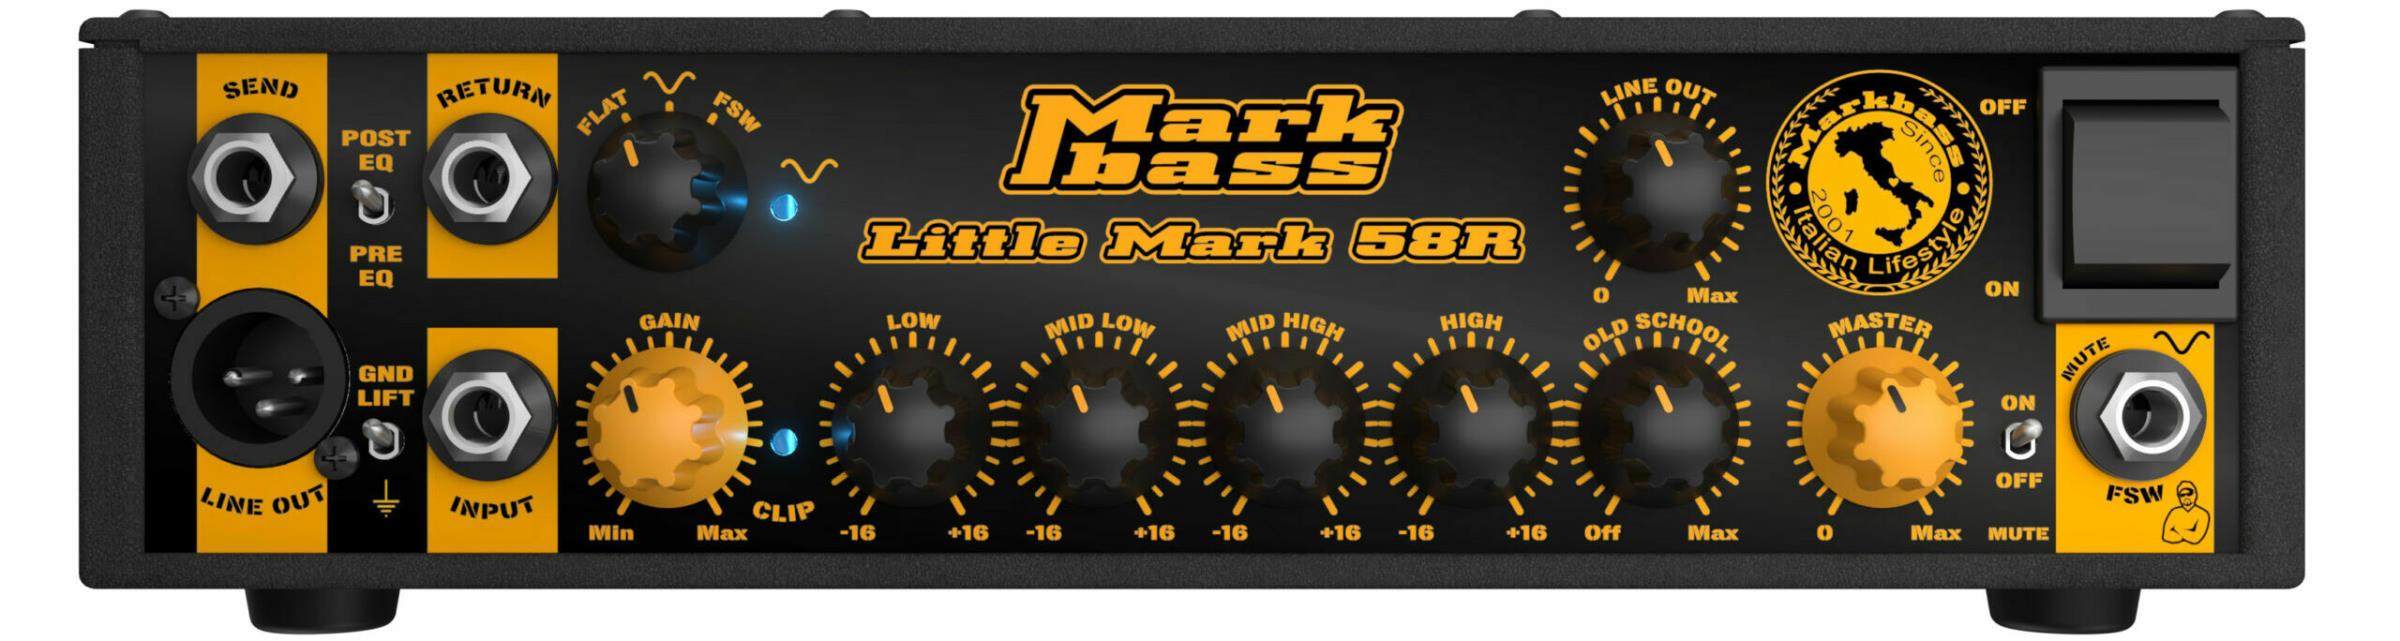 MarkBass Little Mark 58R